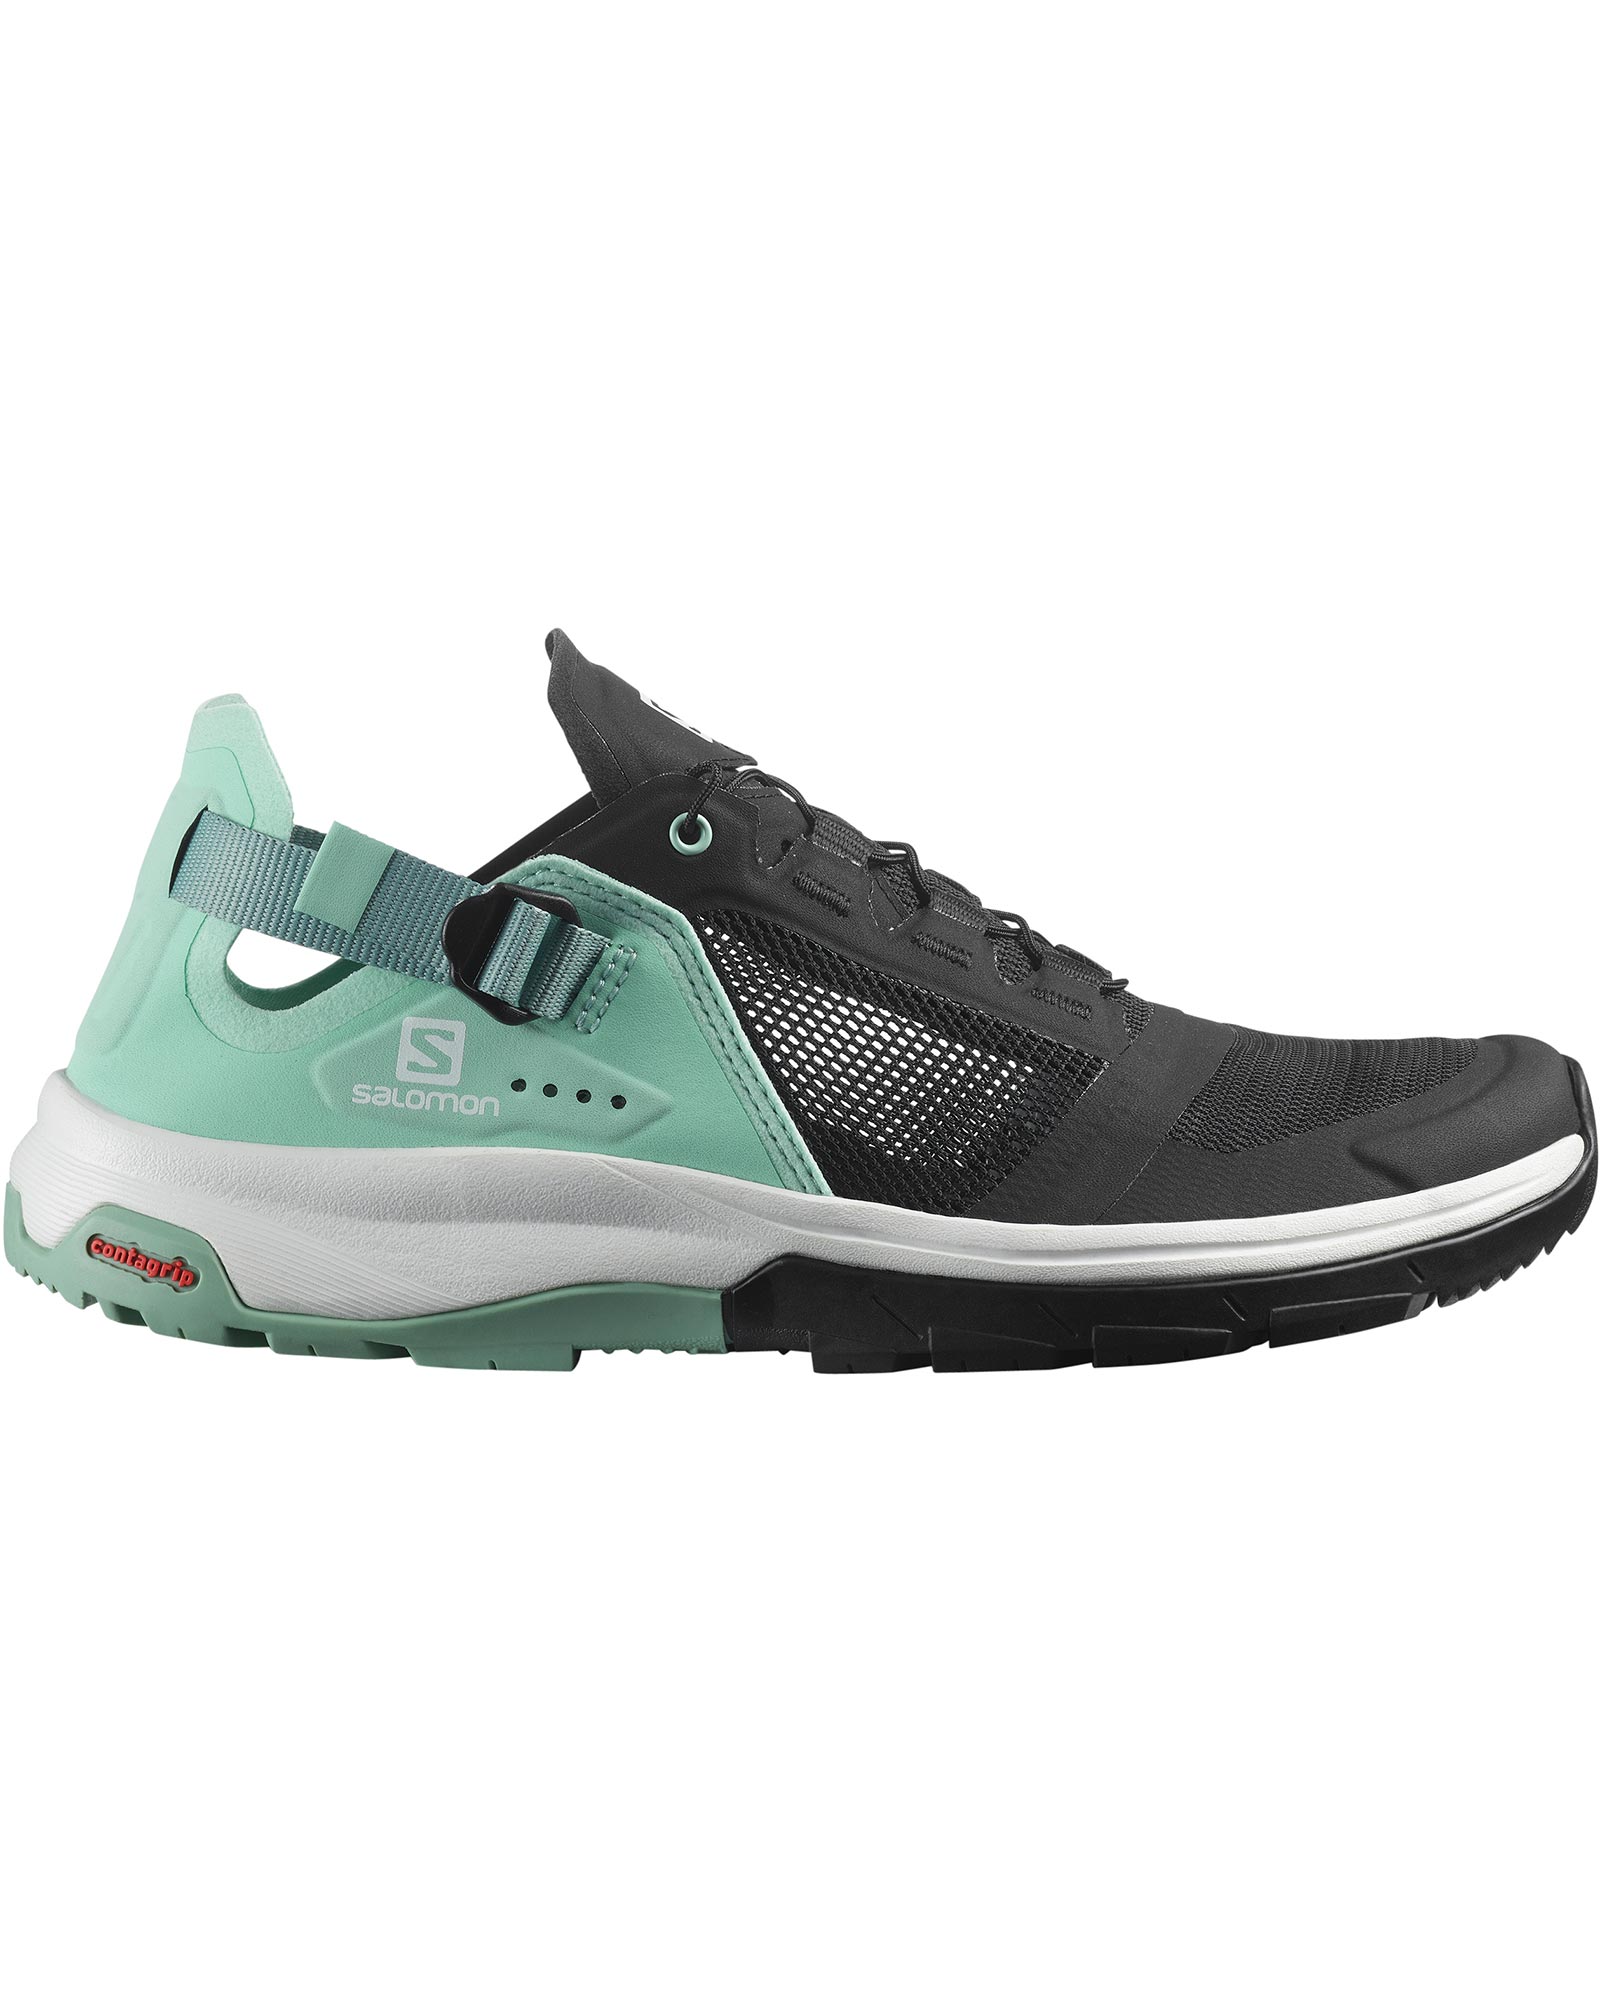 Salomon Tech Amphib 4 Women’s Shoes - Black/Yucca/Granite Green UK 6